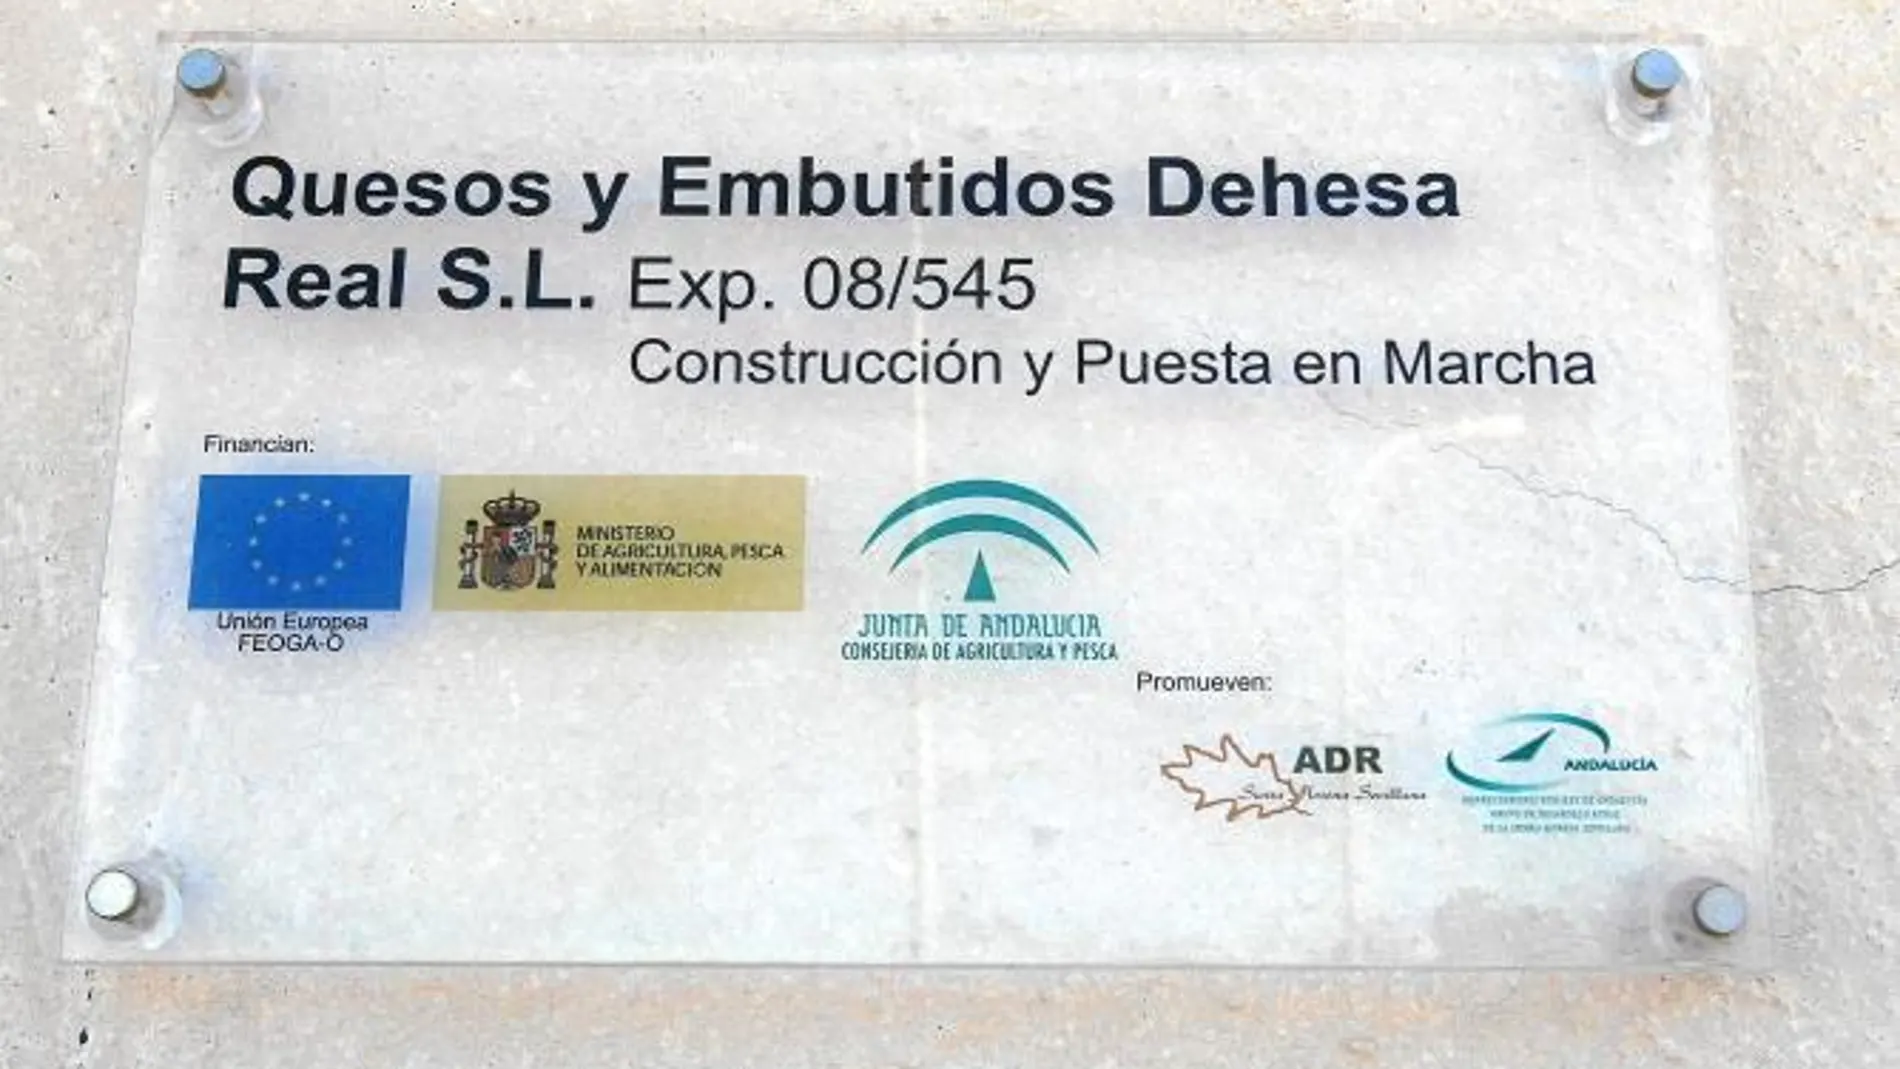 La quesería de un ex alcalde del PSOE cerró tras recibir 50000 euros de ayuda